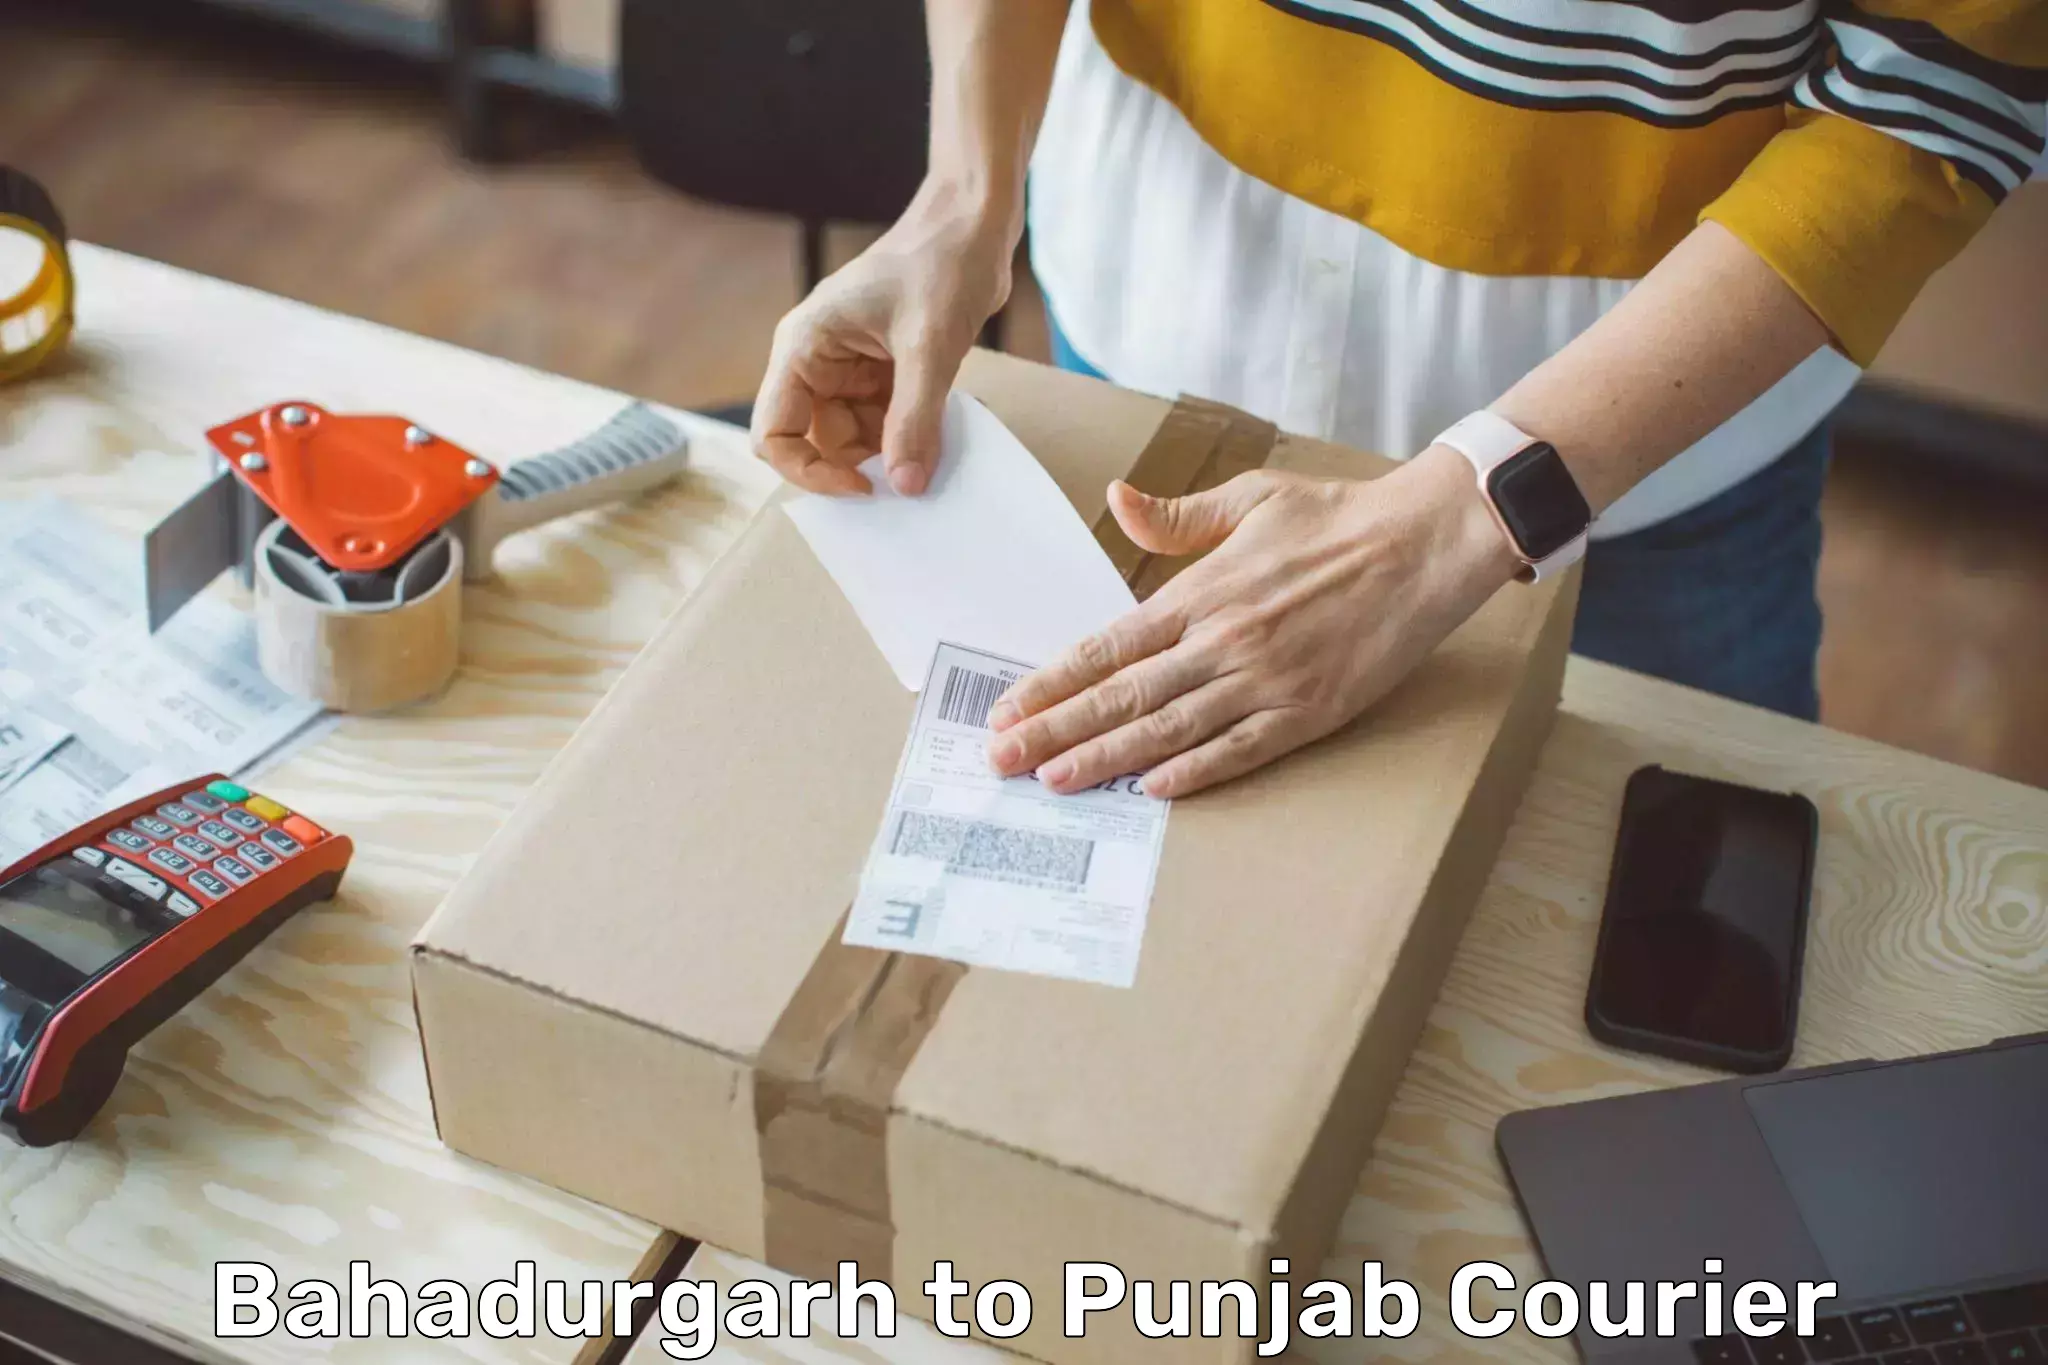 Reliable parcel services Bahadurgarh to Sangrur